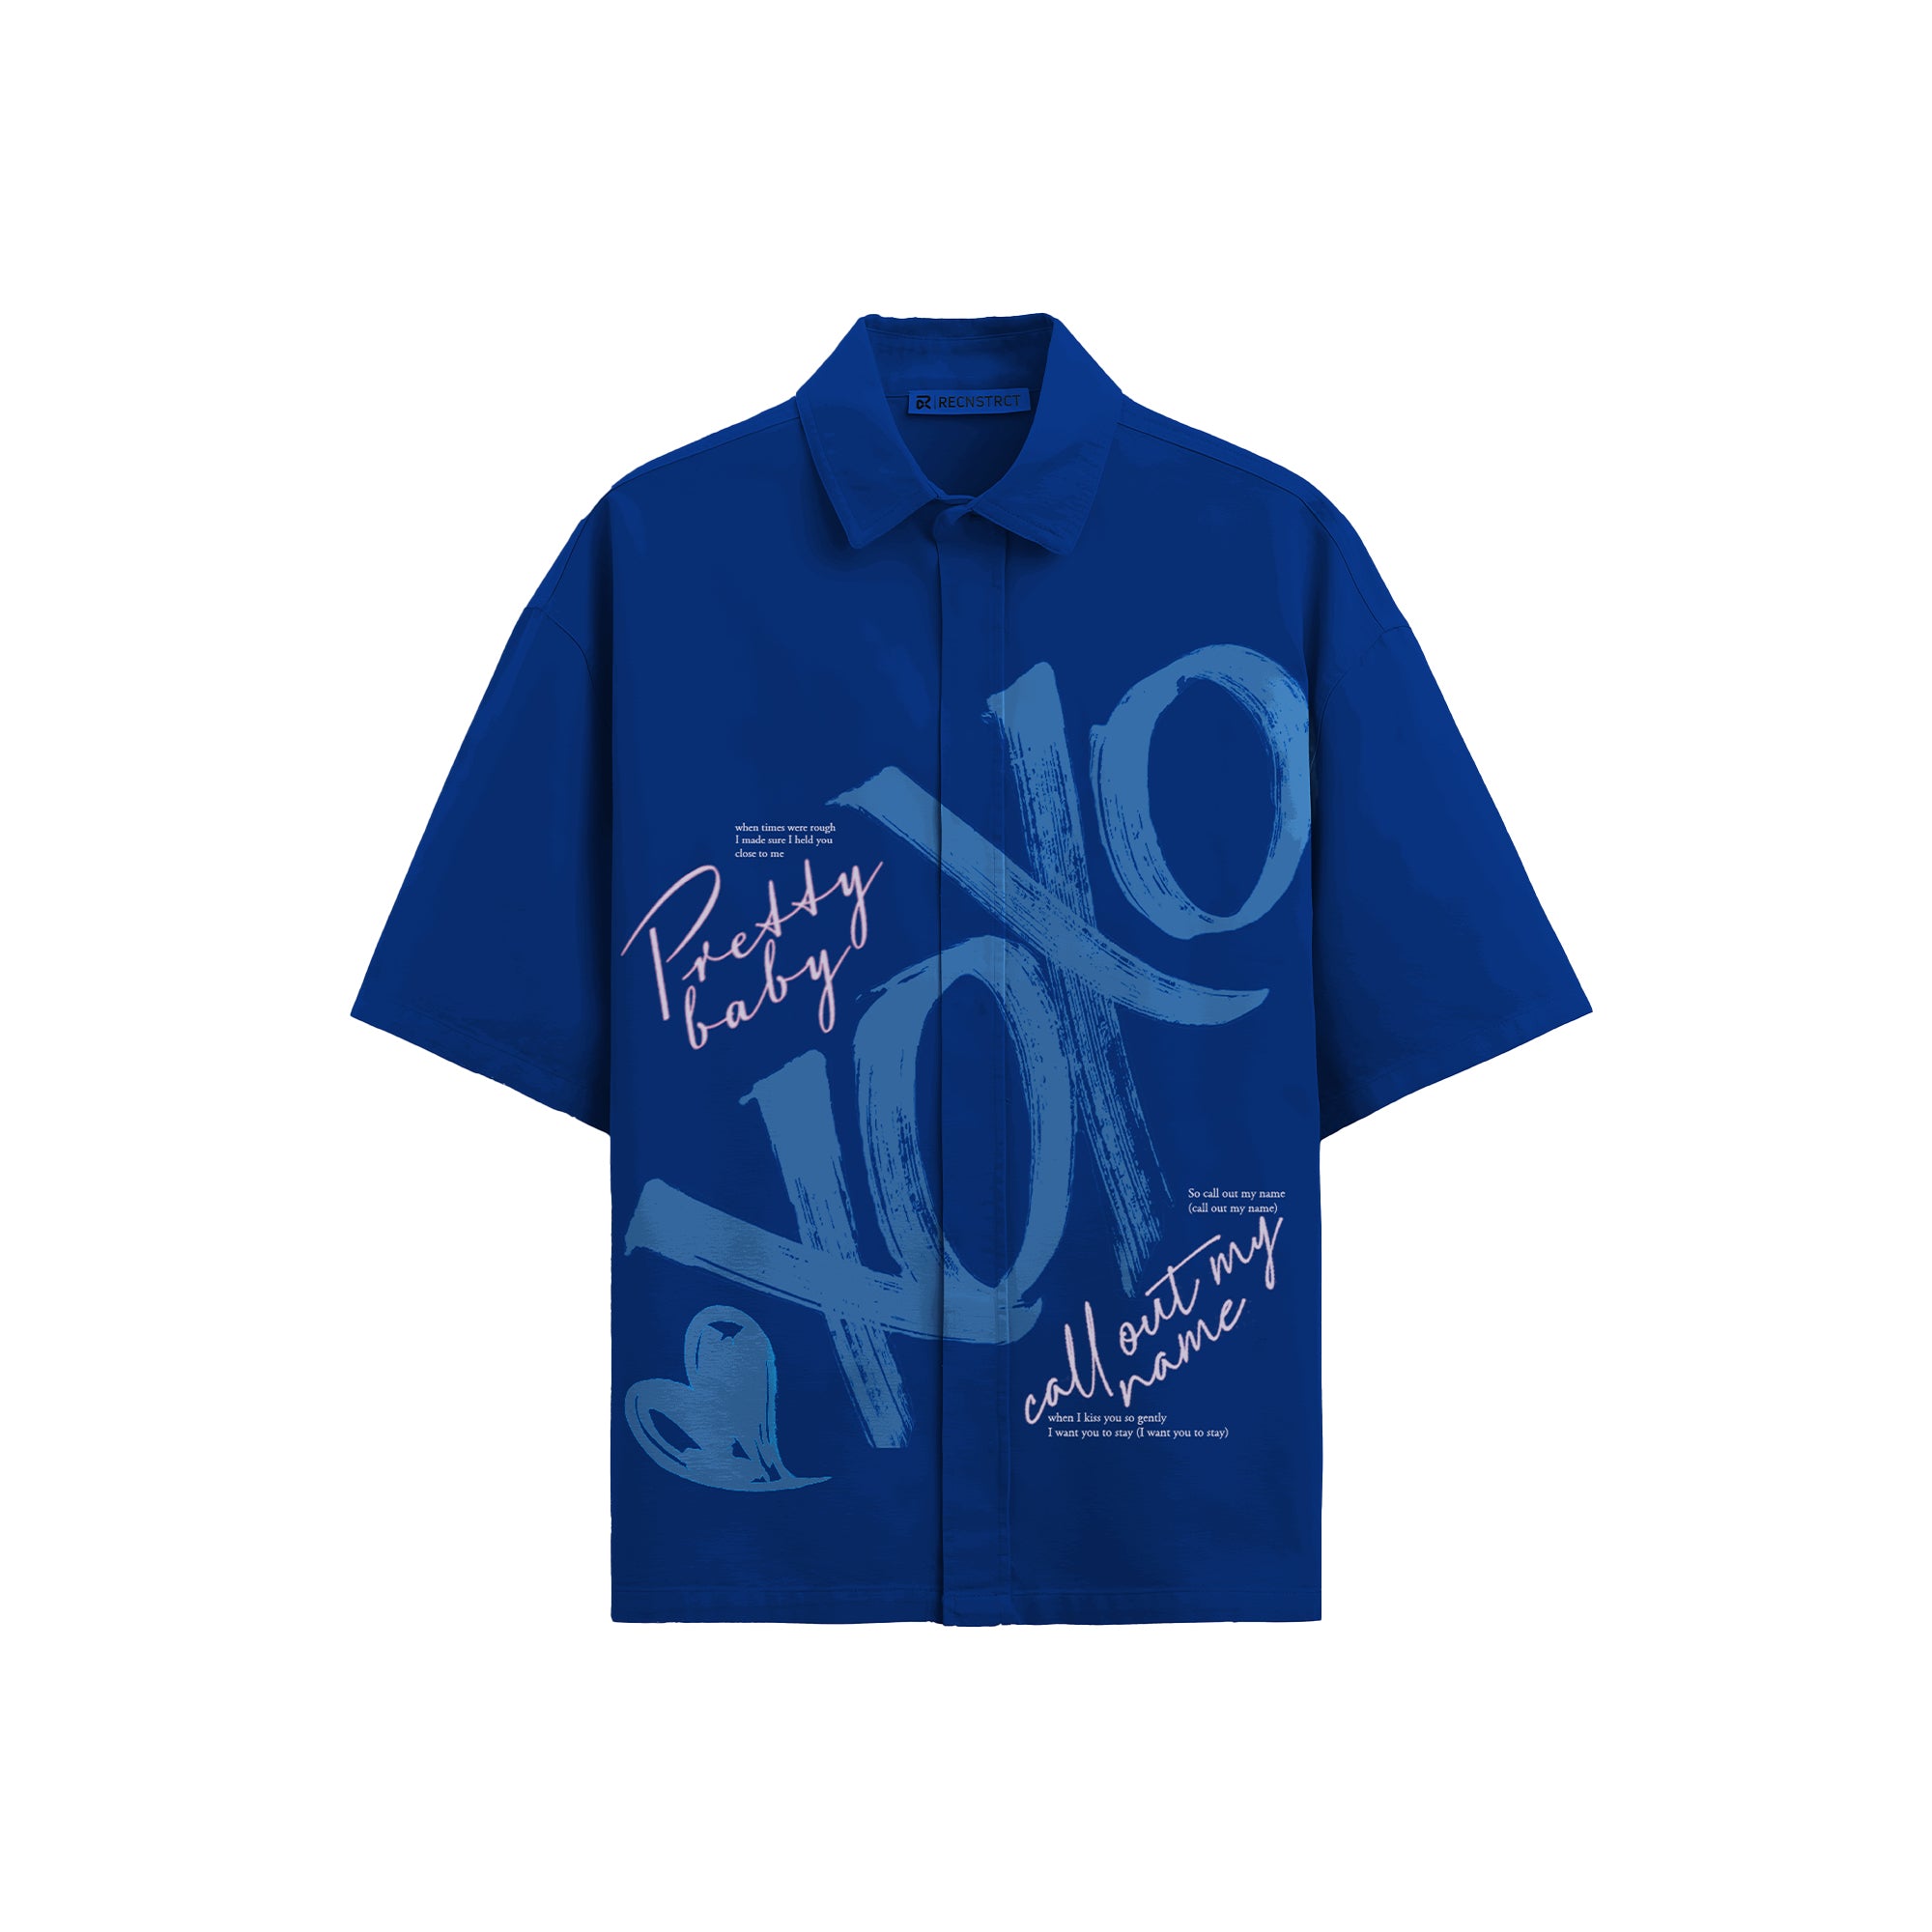 XOXO shirt - Royal blue